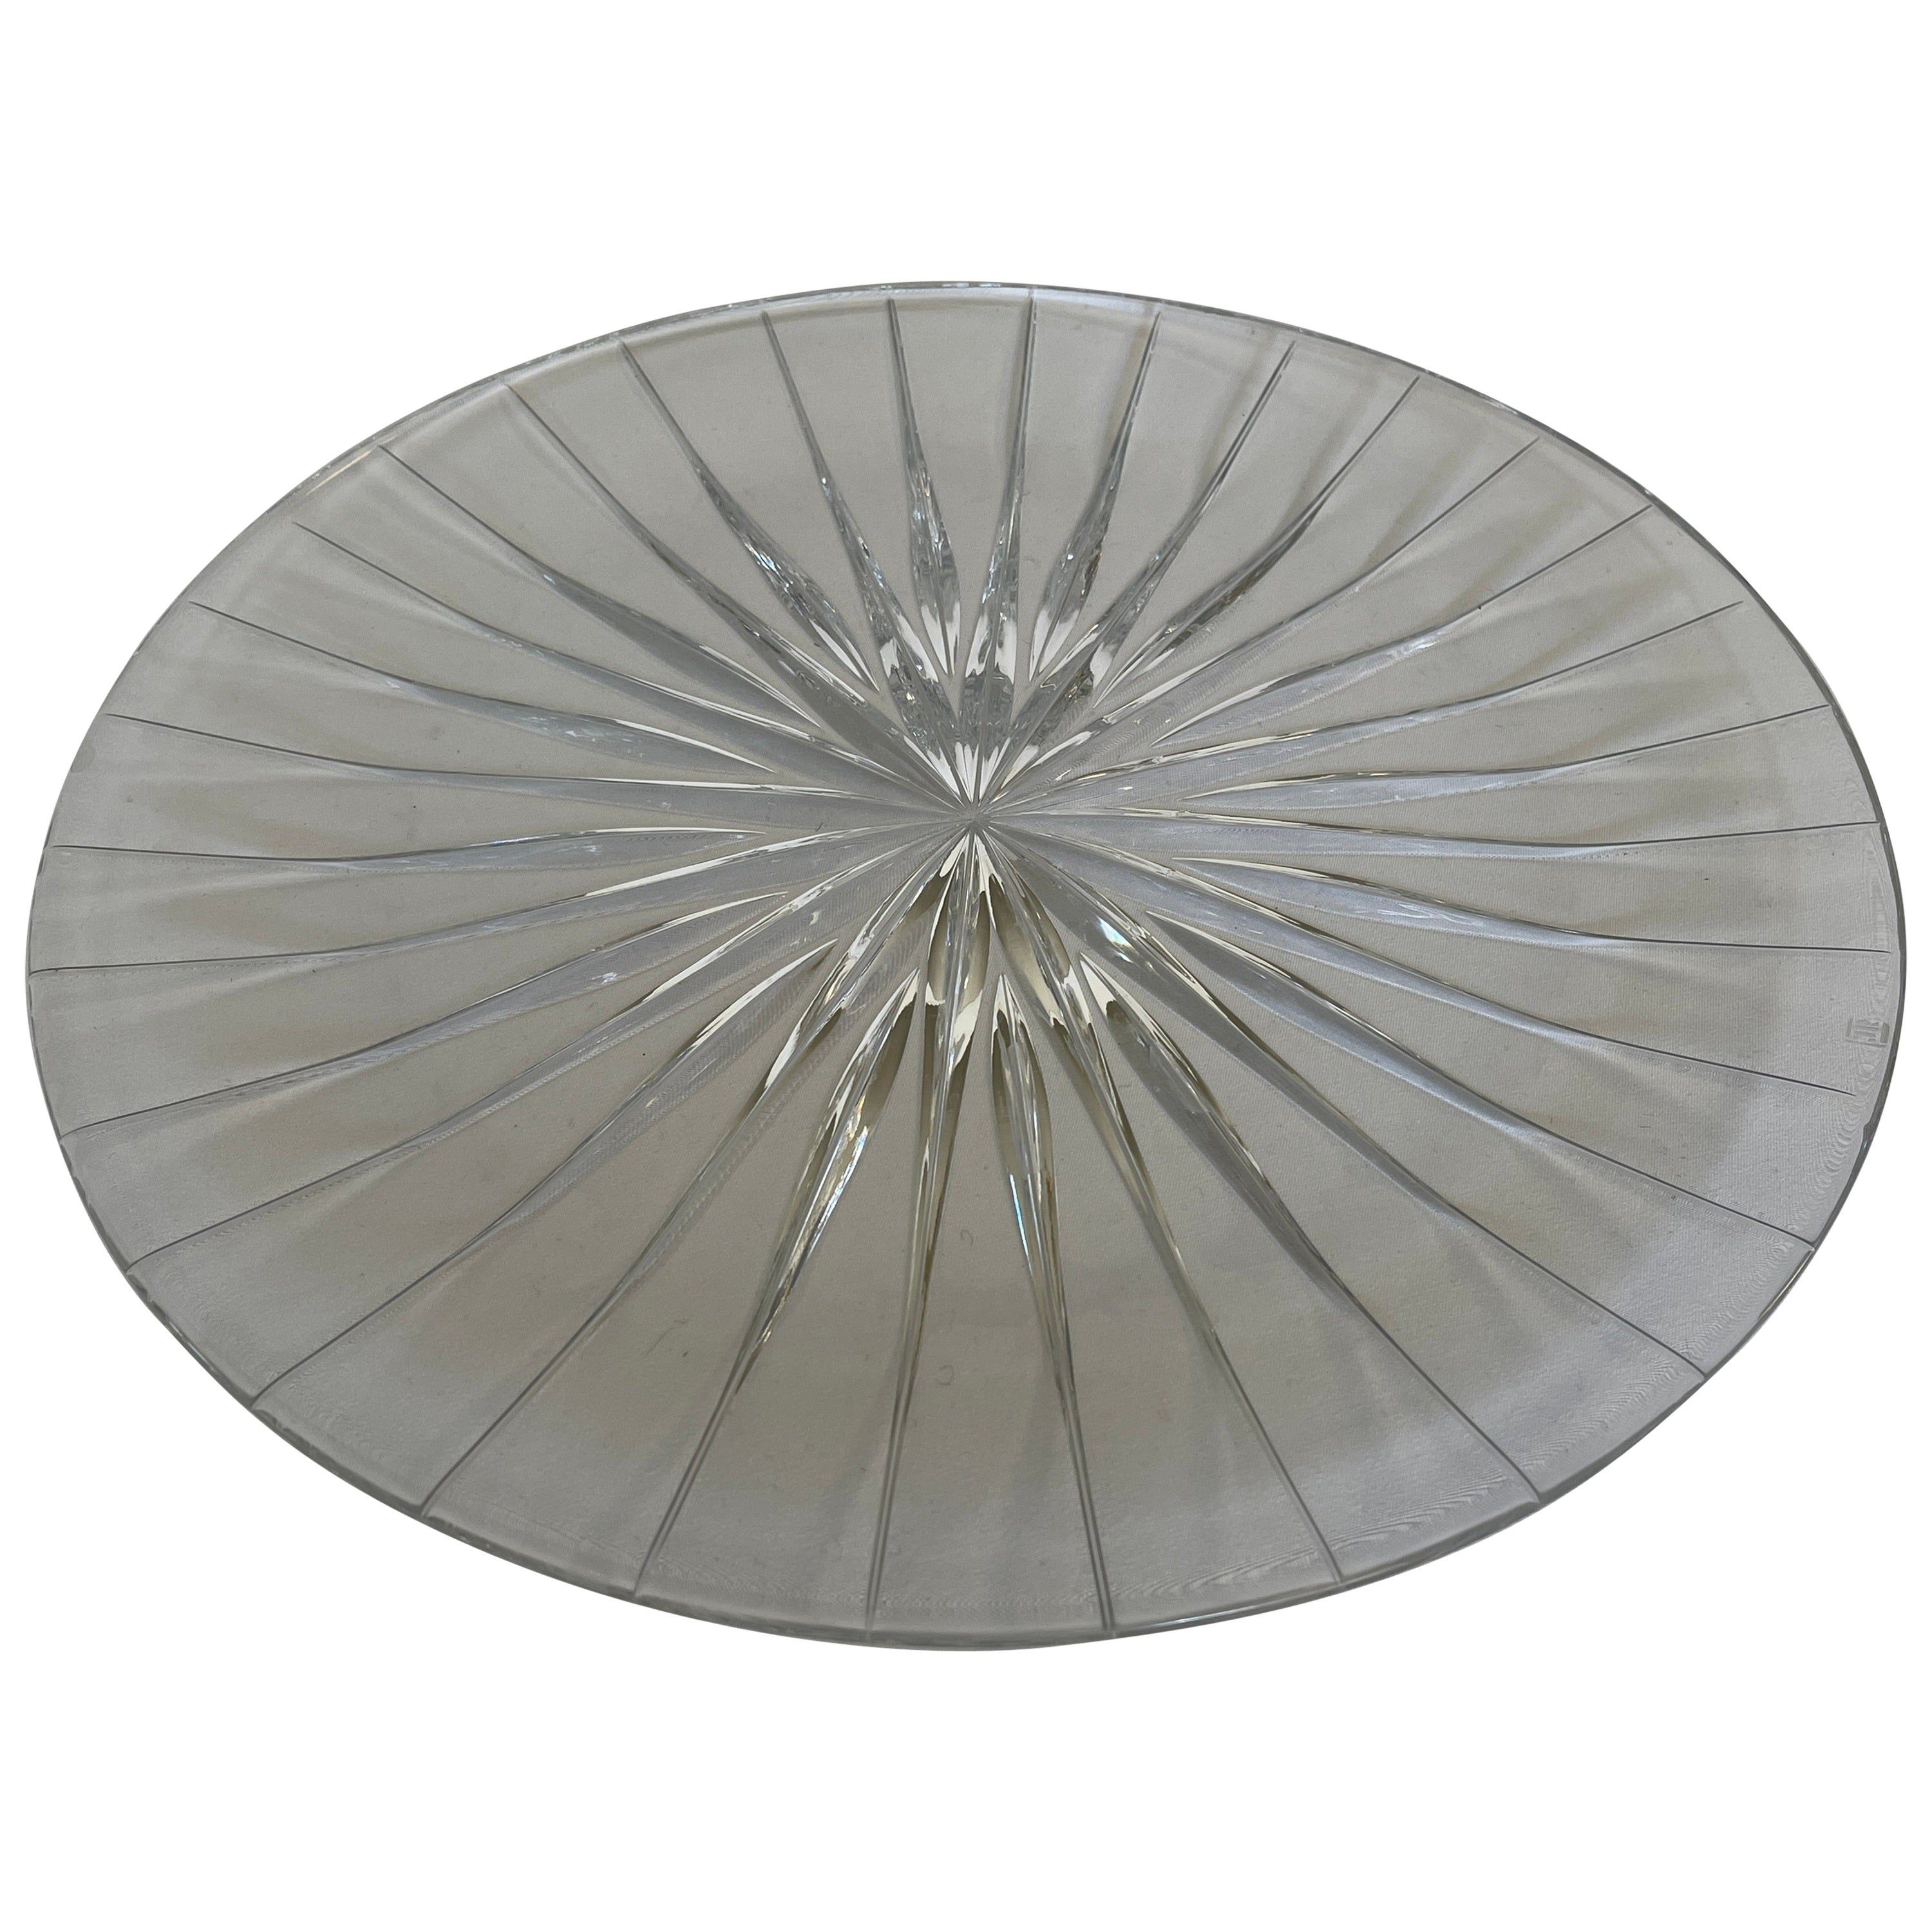 Large Sunburst Design Cut Glass Starburst Round Serving Platter Plate For Sale